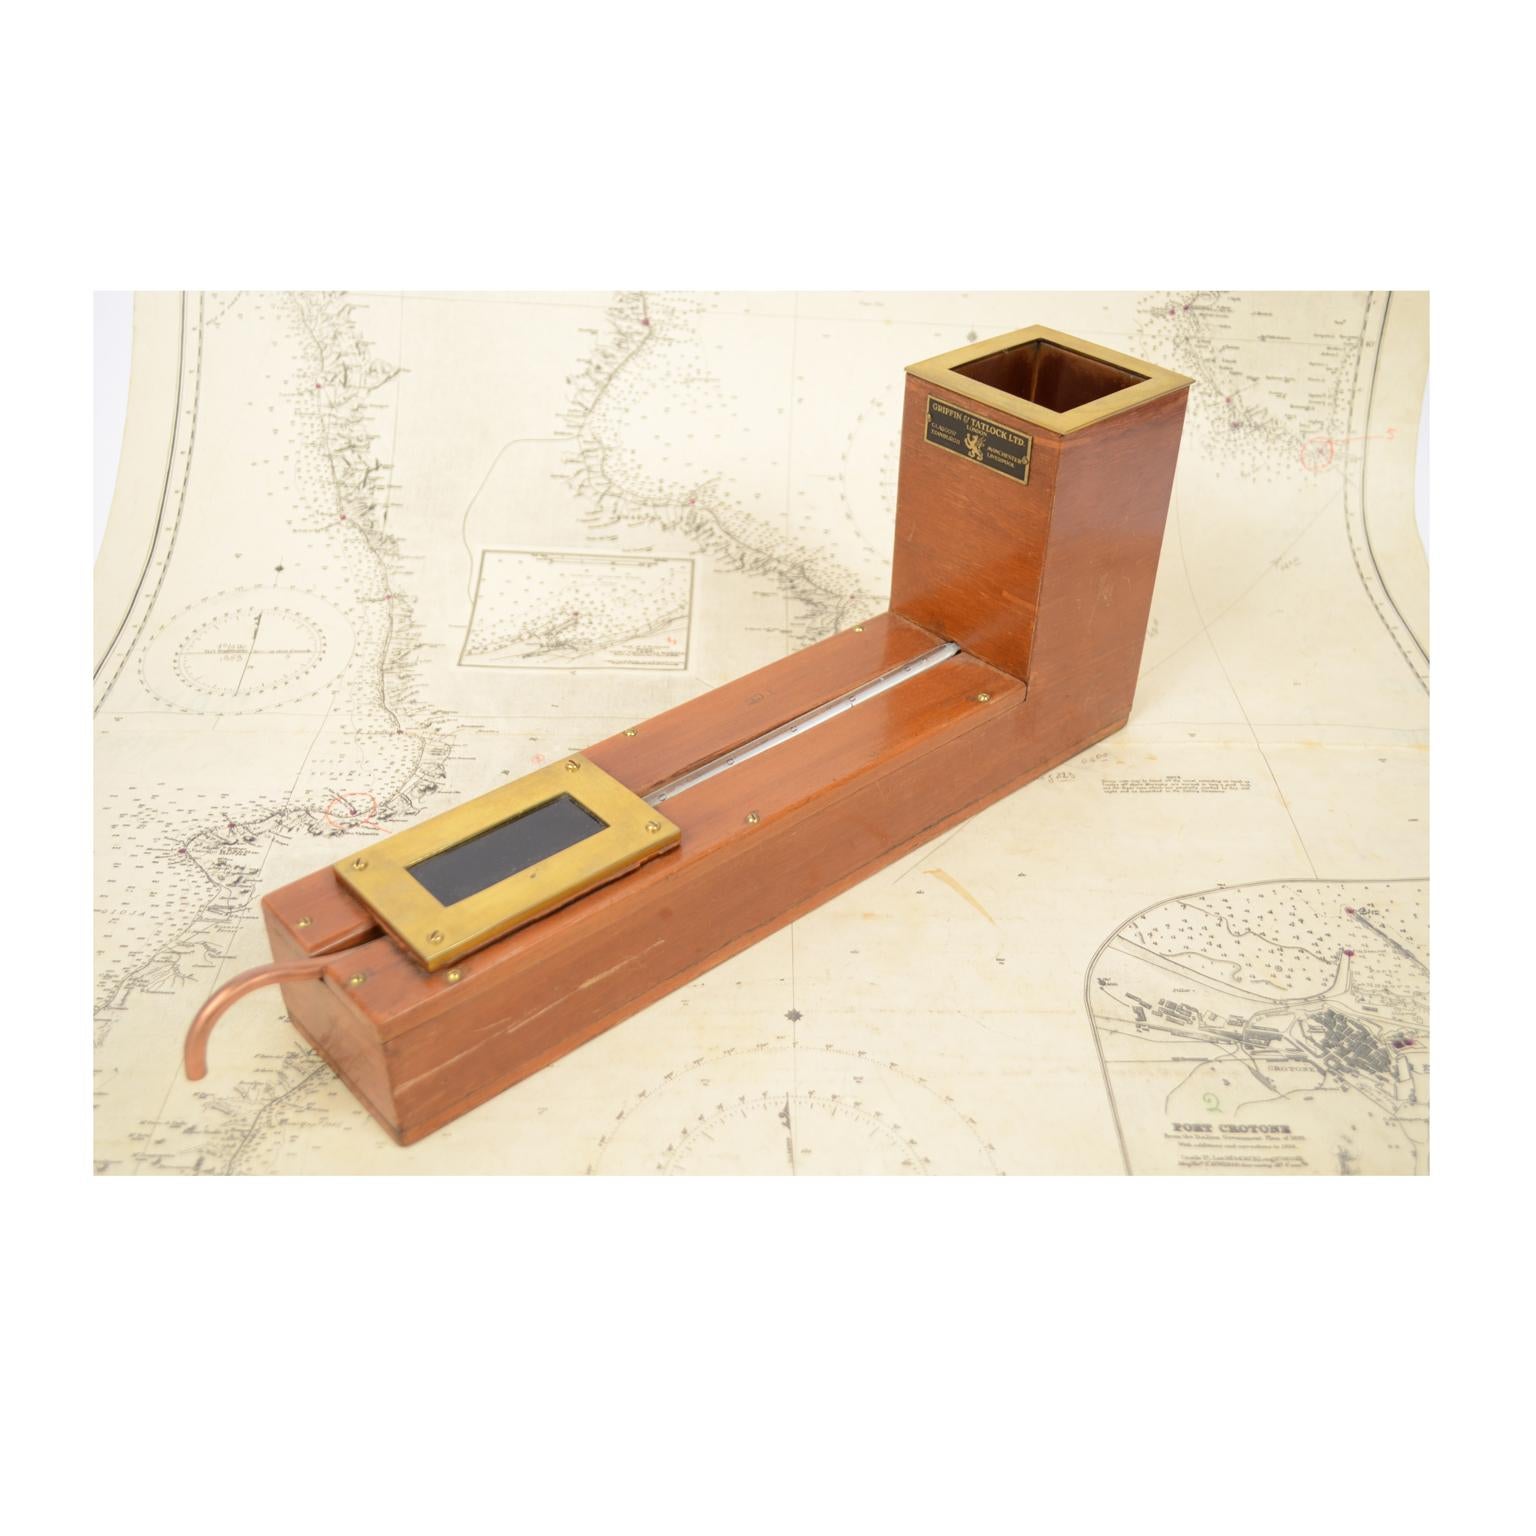 Actinomètre Herschel, années 1930, bois et laiton, signé Griffin & Tatlock ltd London. Il s'agit d'un instrument inventé en 1825 par John Herschel et utilisé pour la mesure de la chaleur solaire. Très bon état. Mesures : 40 x 16 cm.
L'expédition est